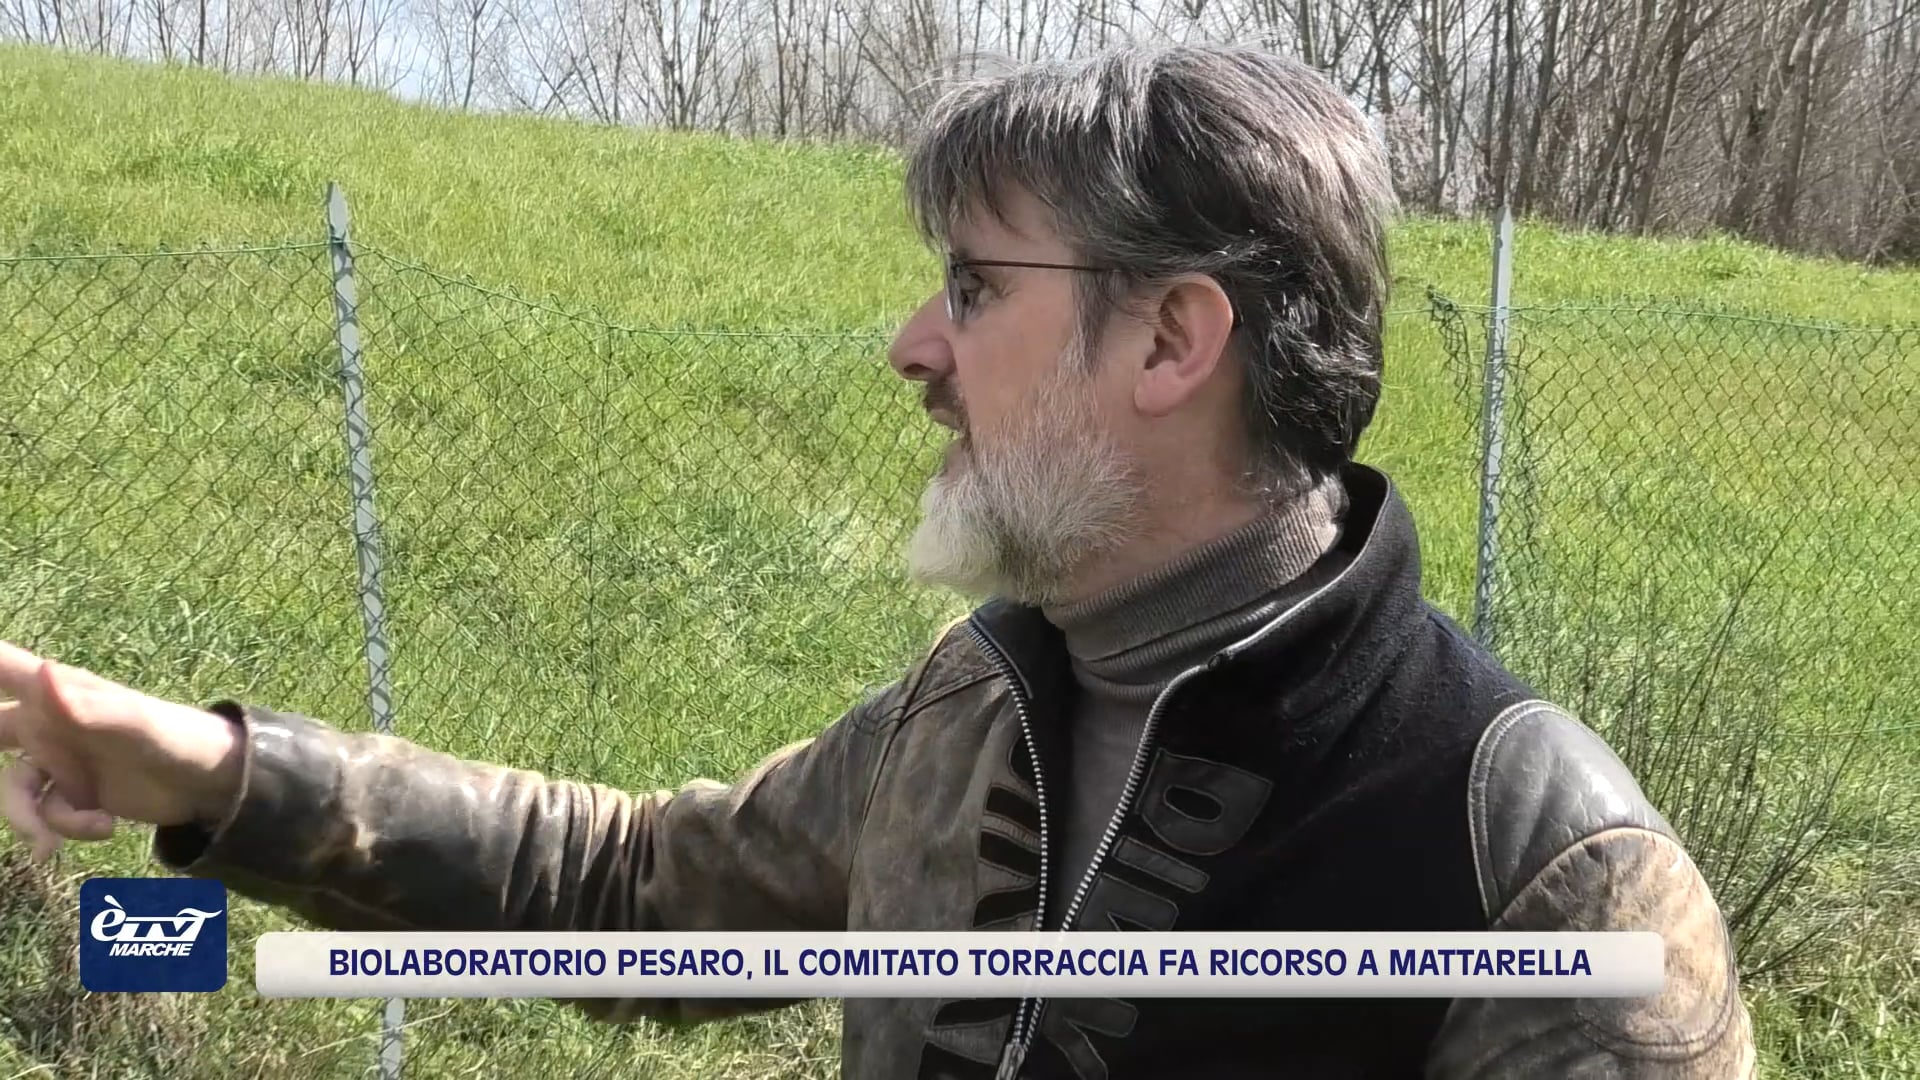 Biolaboratorio Pesaro, il Comitato Torraccia fa ricorso a Mattarella - VIDEO